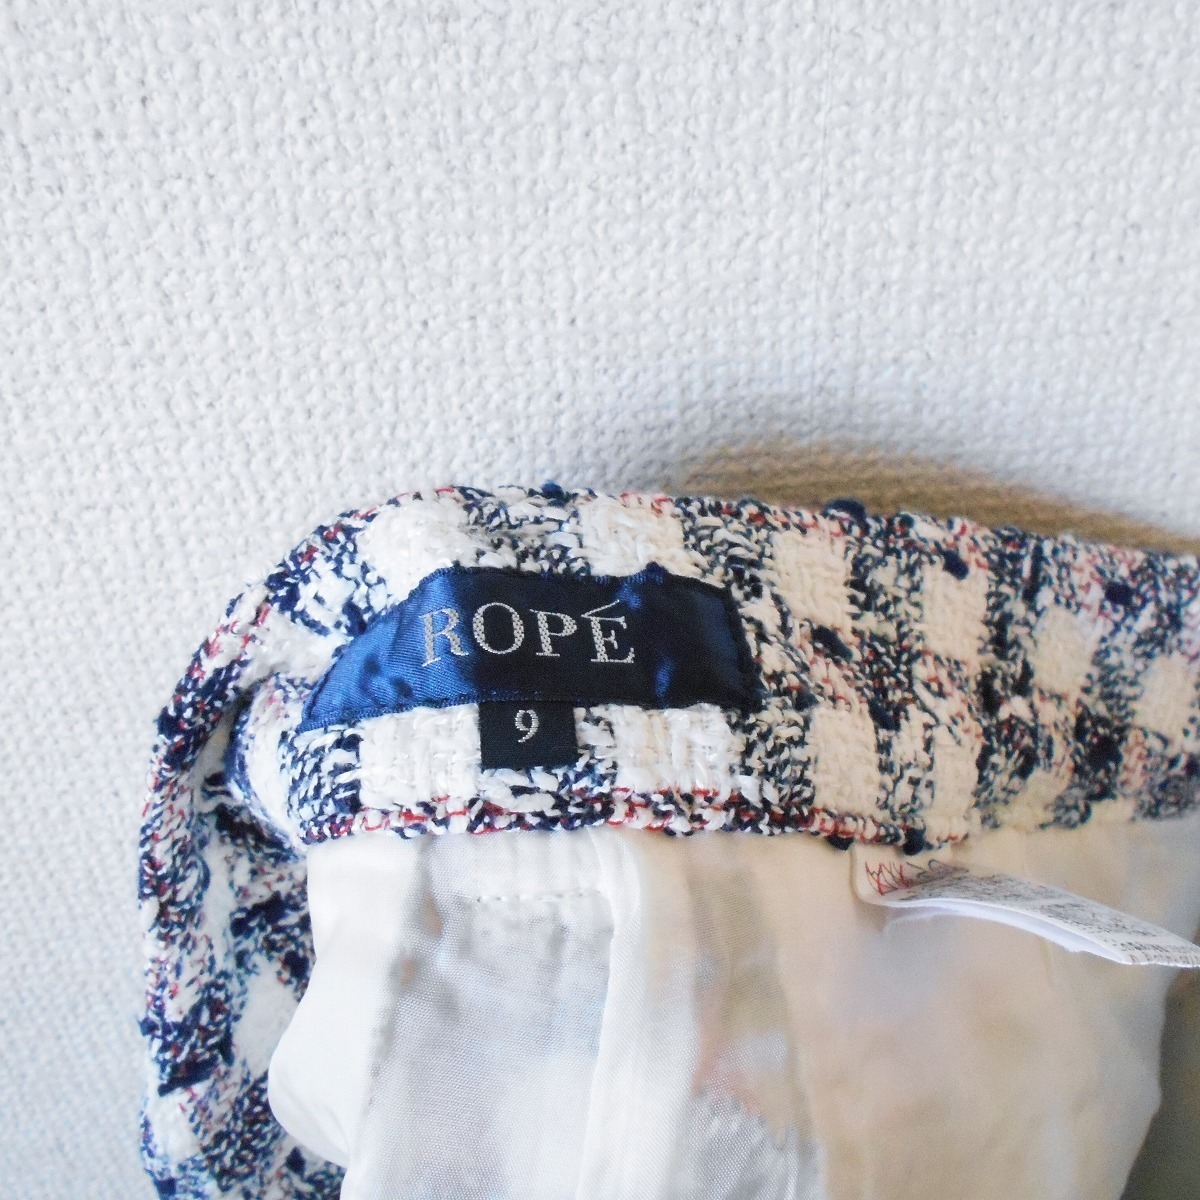  Rope ROPE осень-зима направление женский для шорты сделано в Японии 9